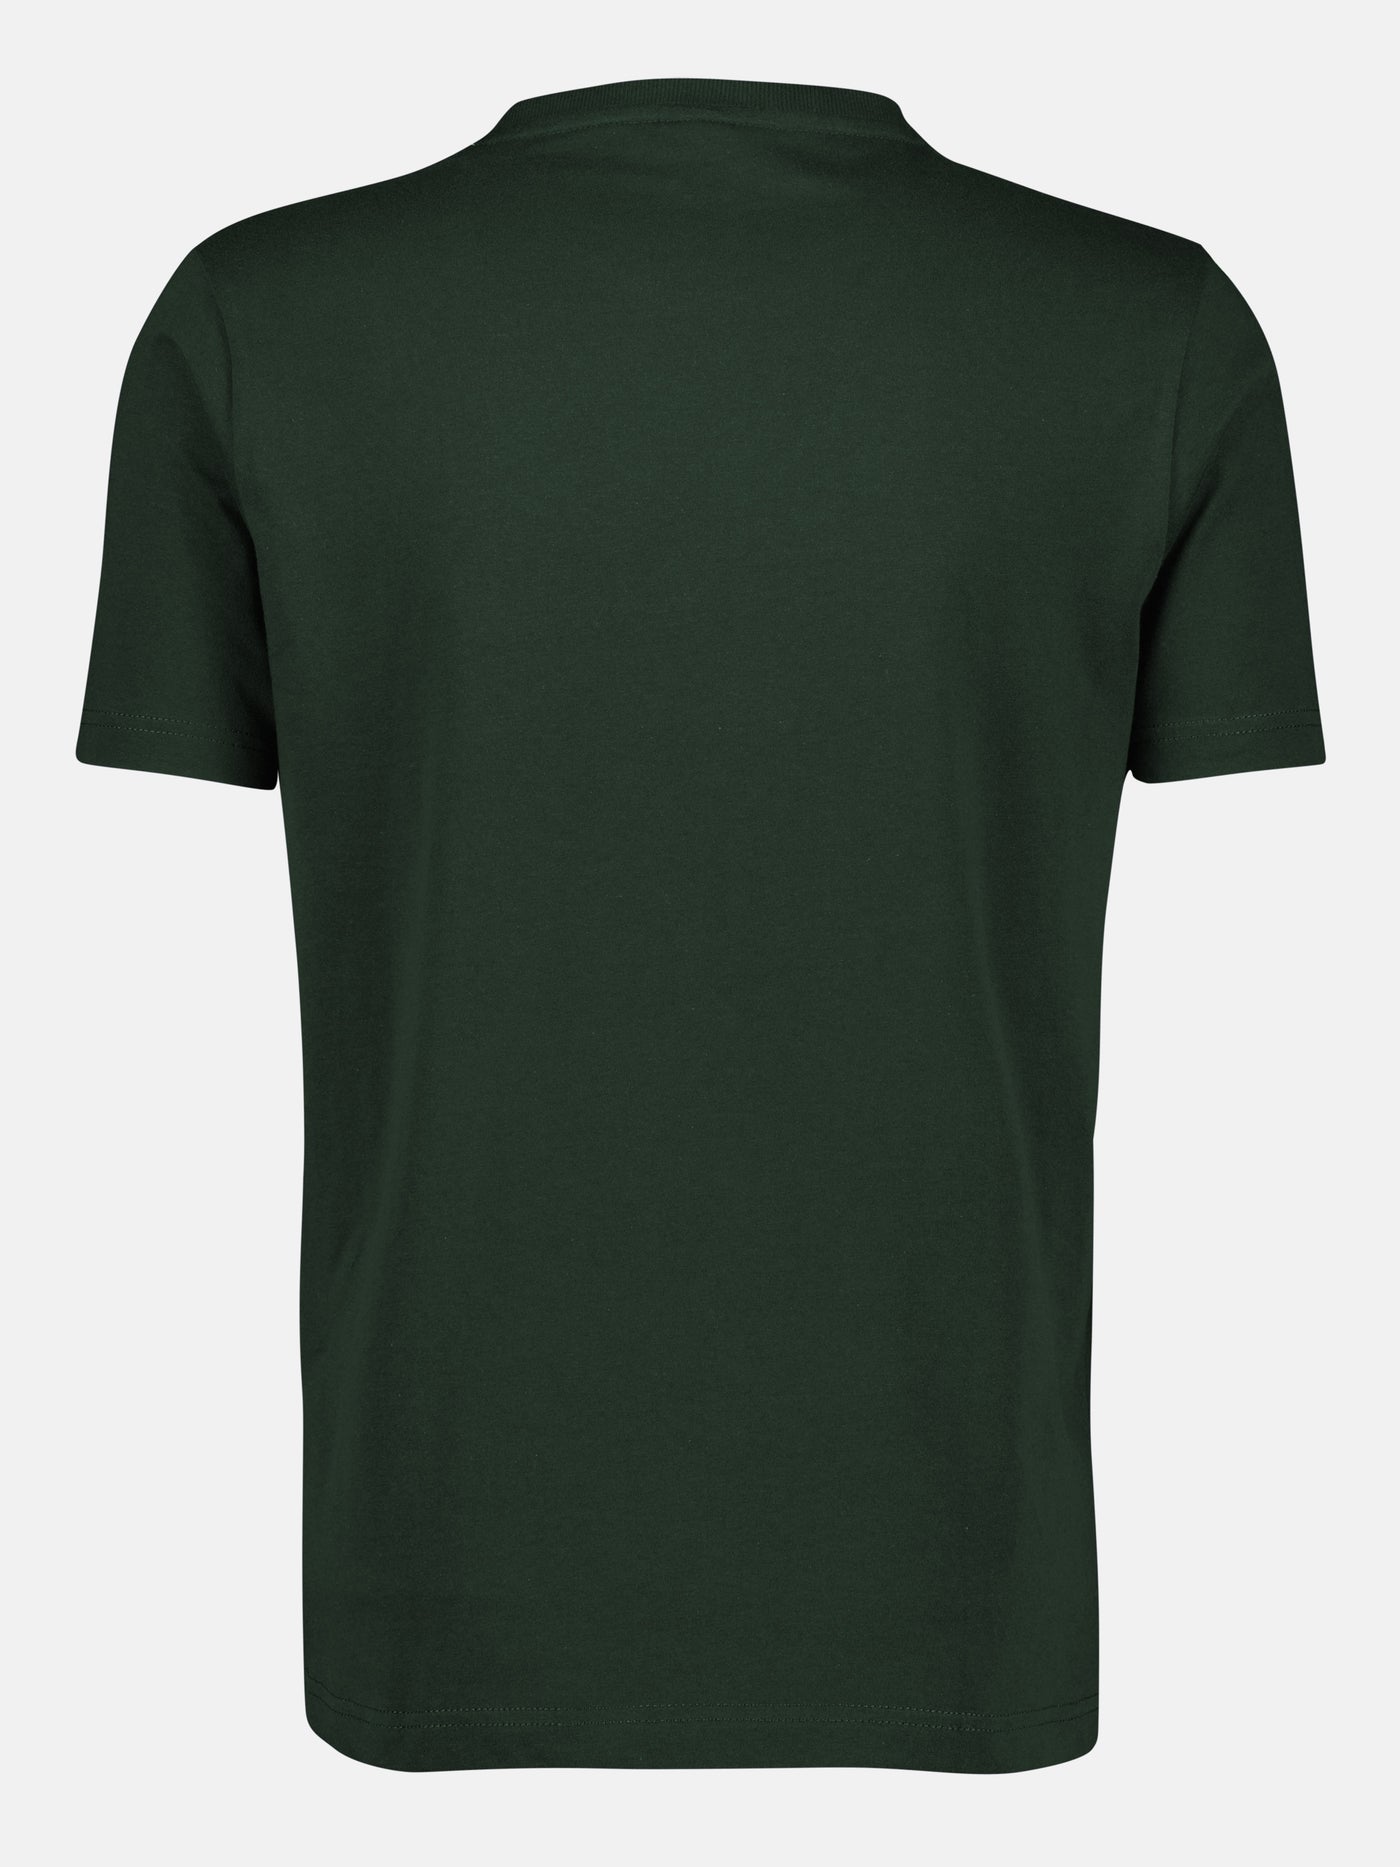 Rundhals T-Shirt mit großem Logo Druck